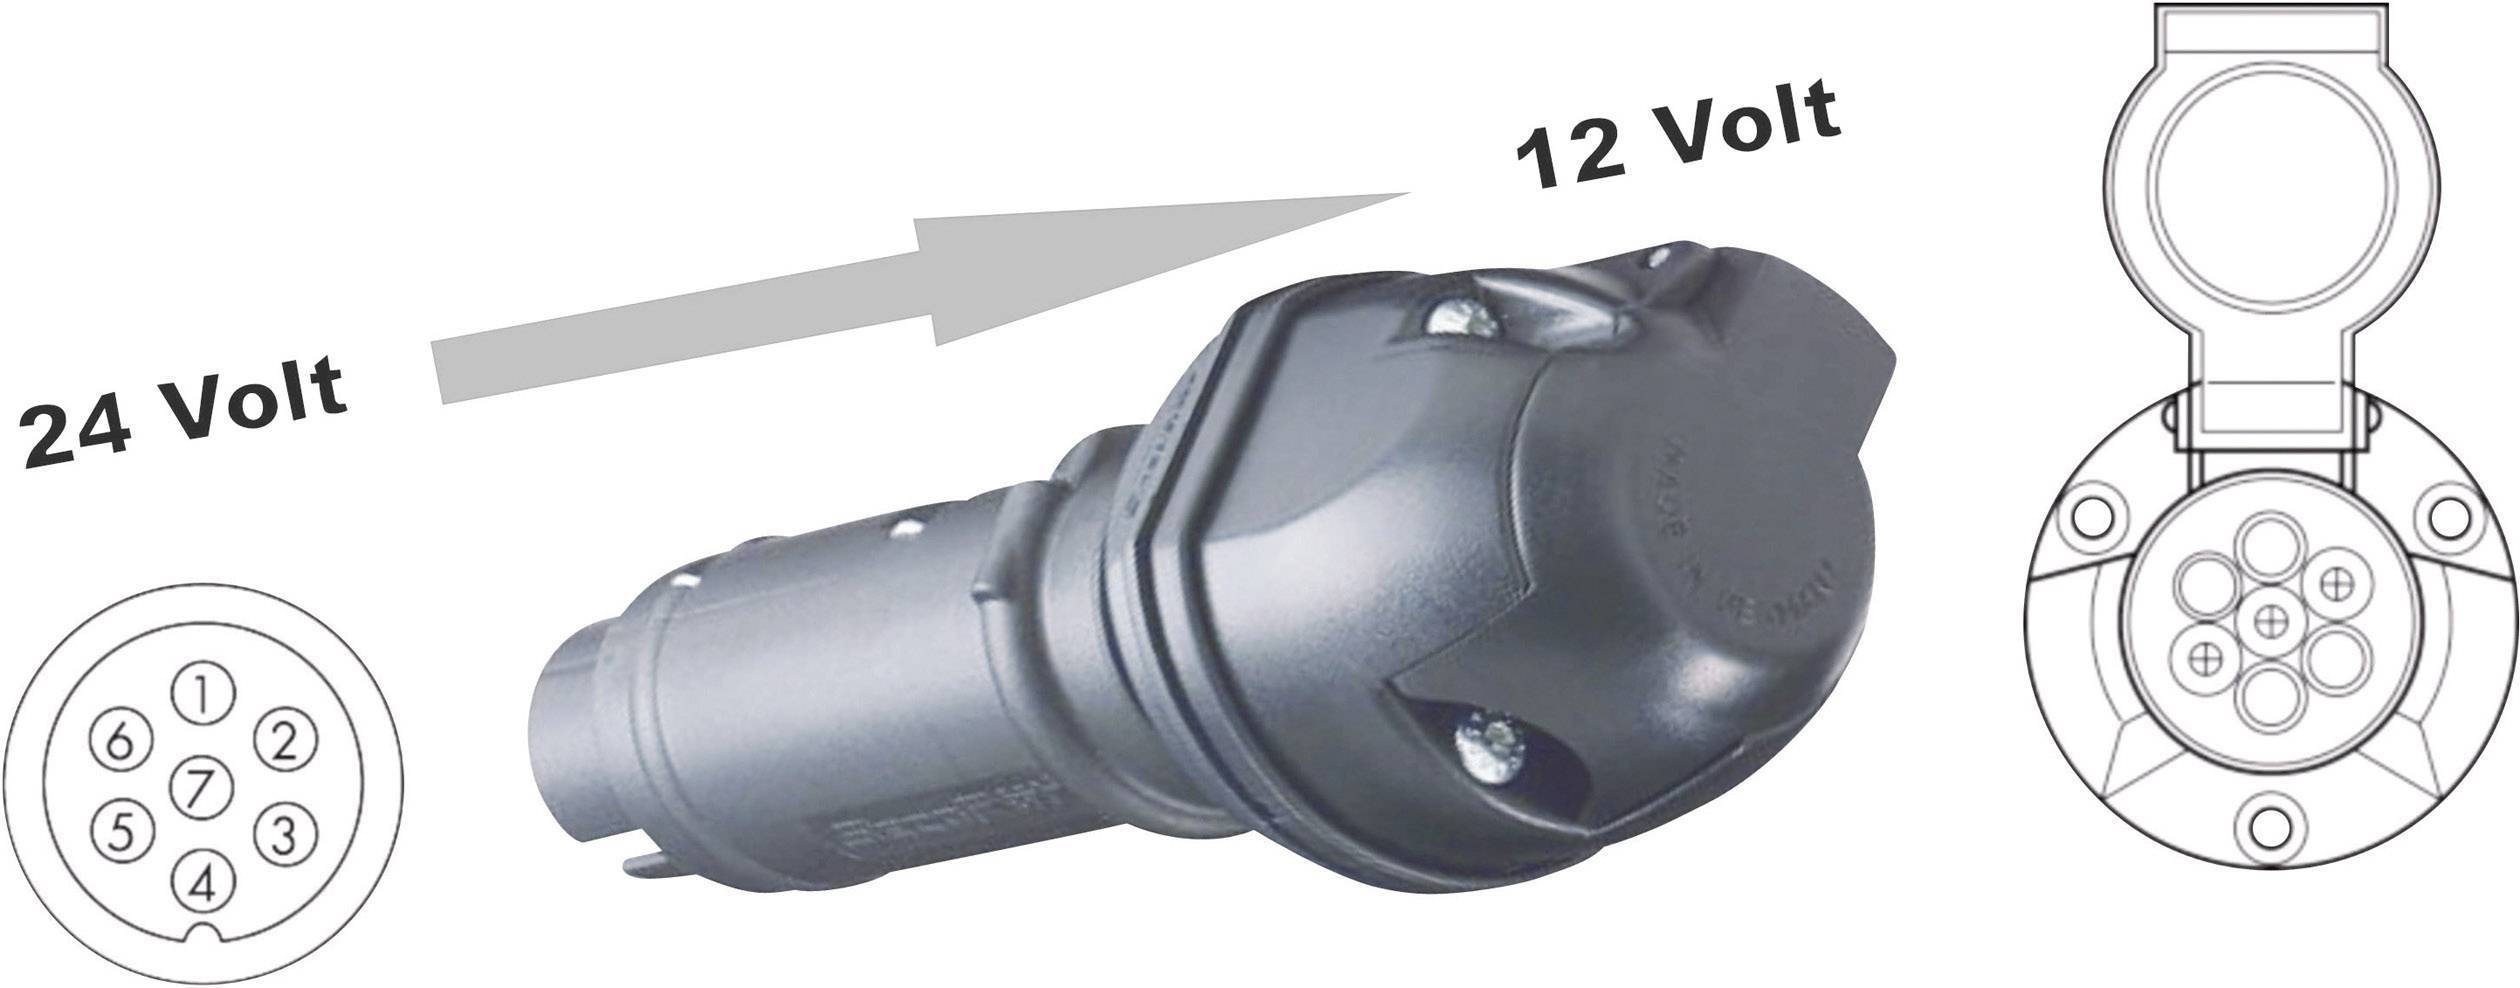 Voltage Reducer 24v to 12v (Converts a 24V Socket to 12V Socket)